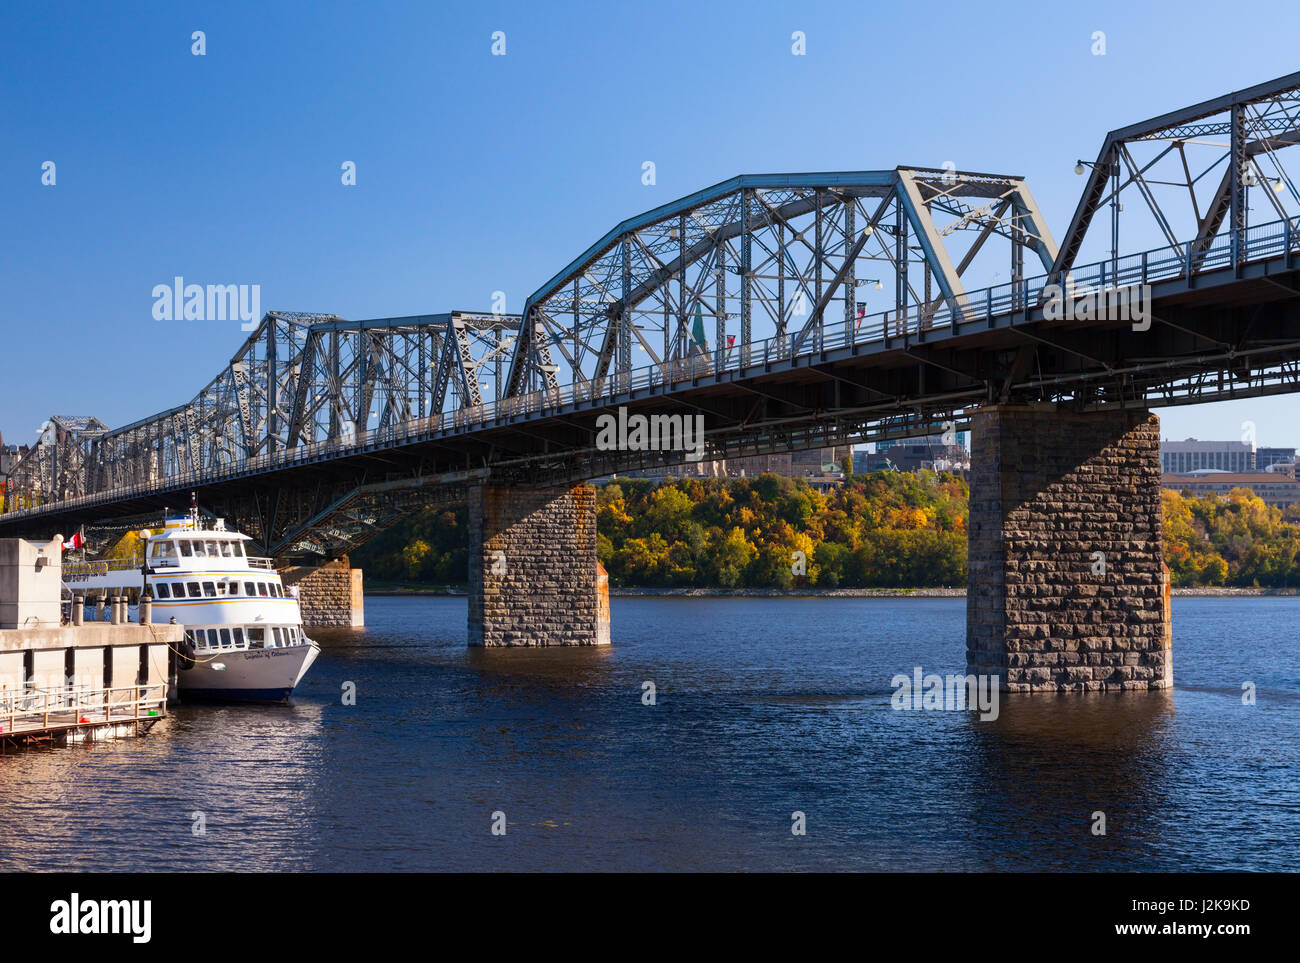 Le Royal Alexandra Pont Interprovincial (Pont) qui traverse la rivière des Outaouais pour connecter les provinces de l'Ontario et du Québec. Banque D'Images